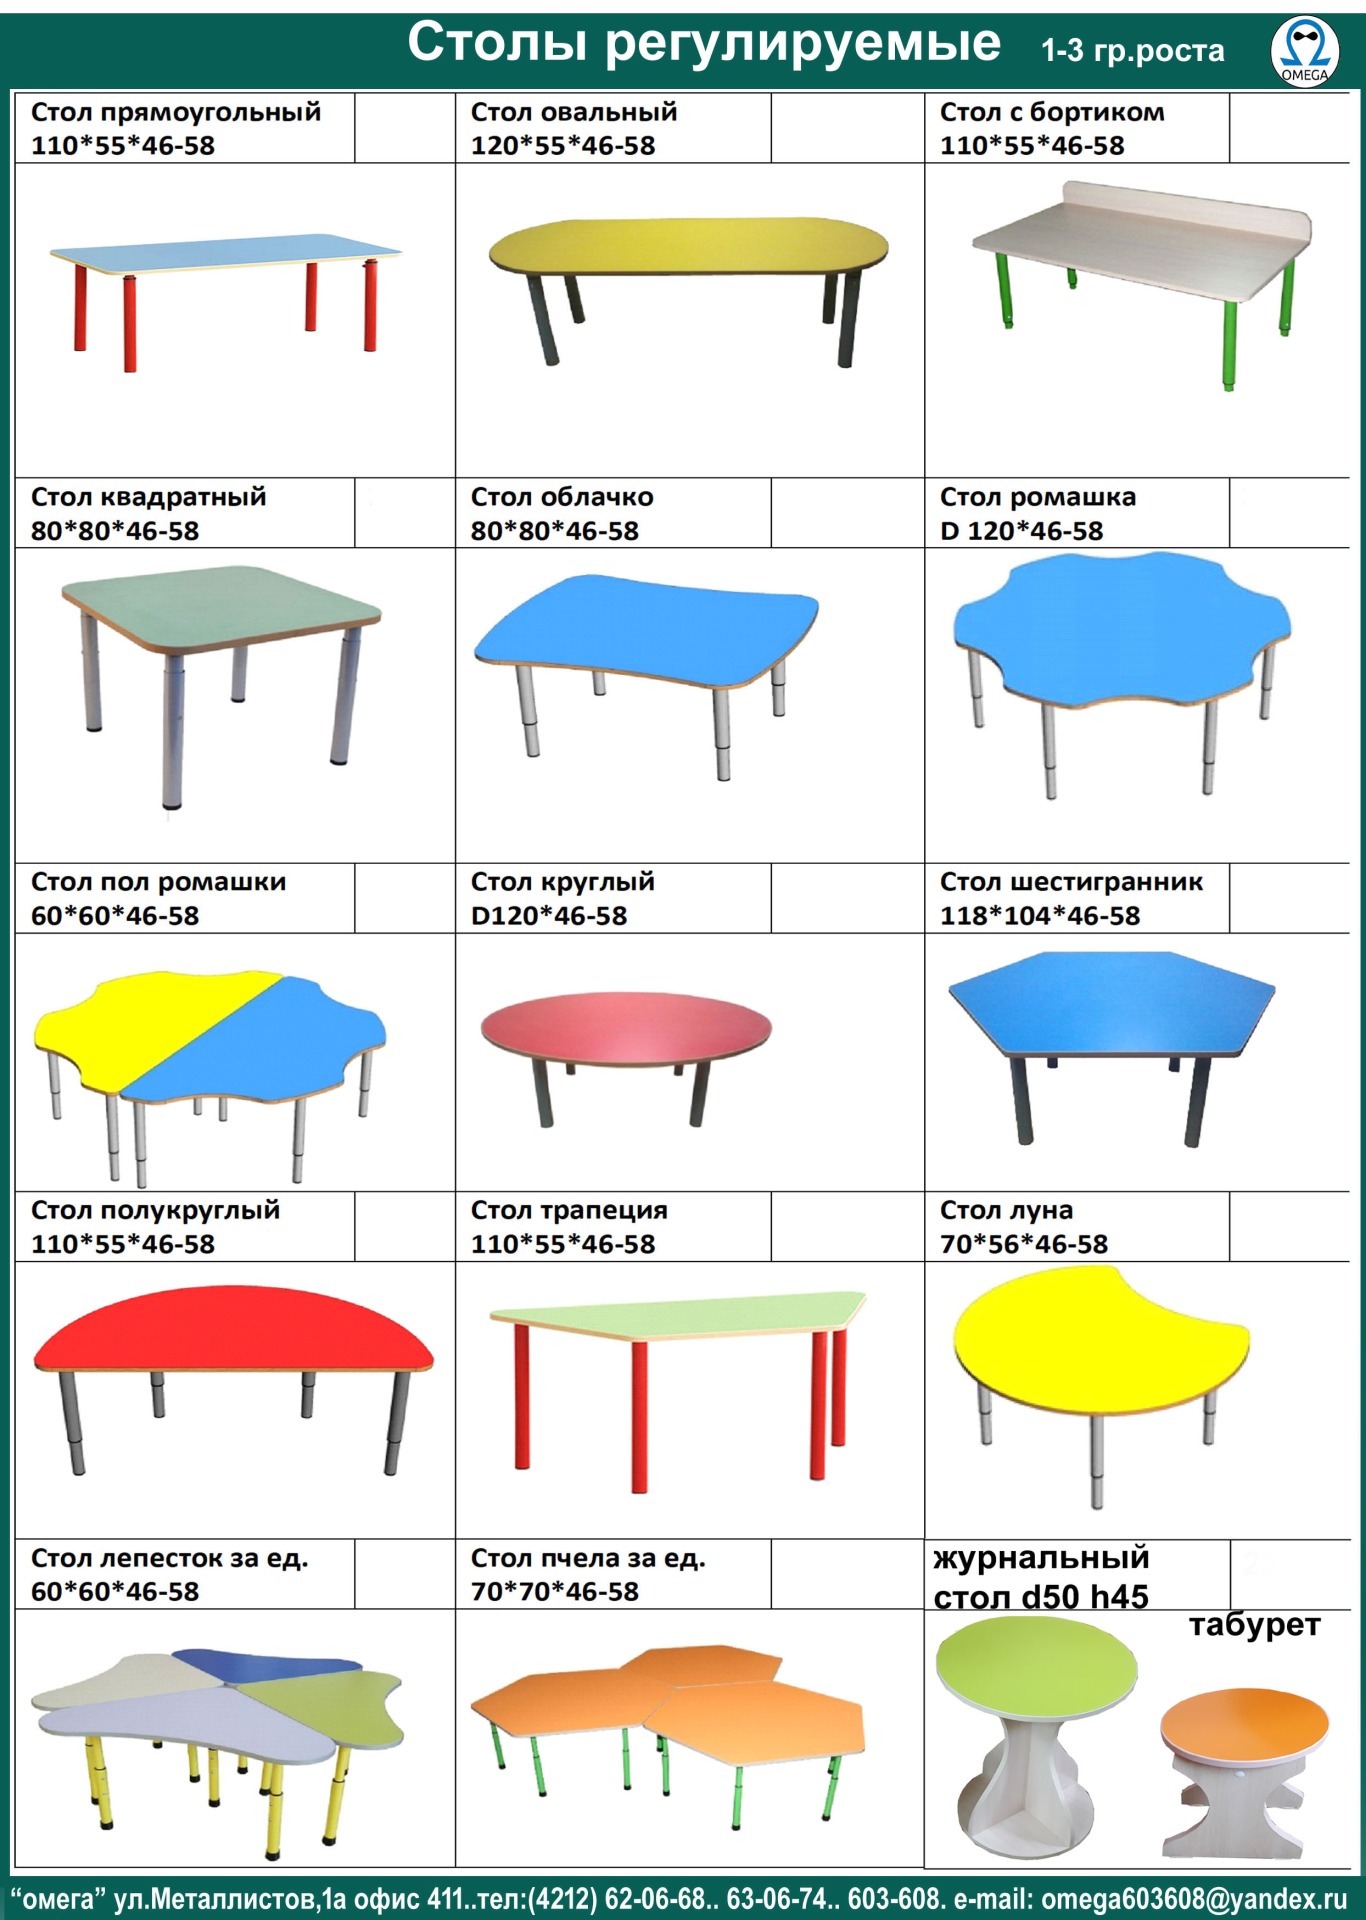 Размер столов для детей в детском саду